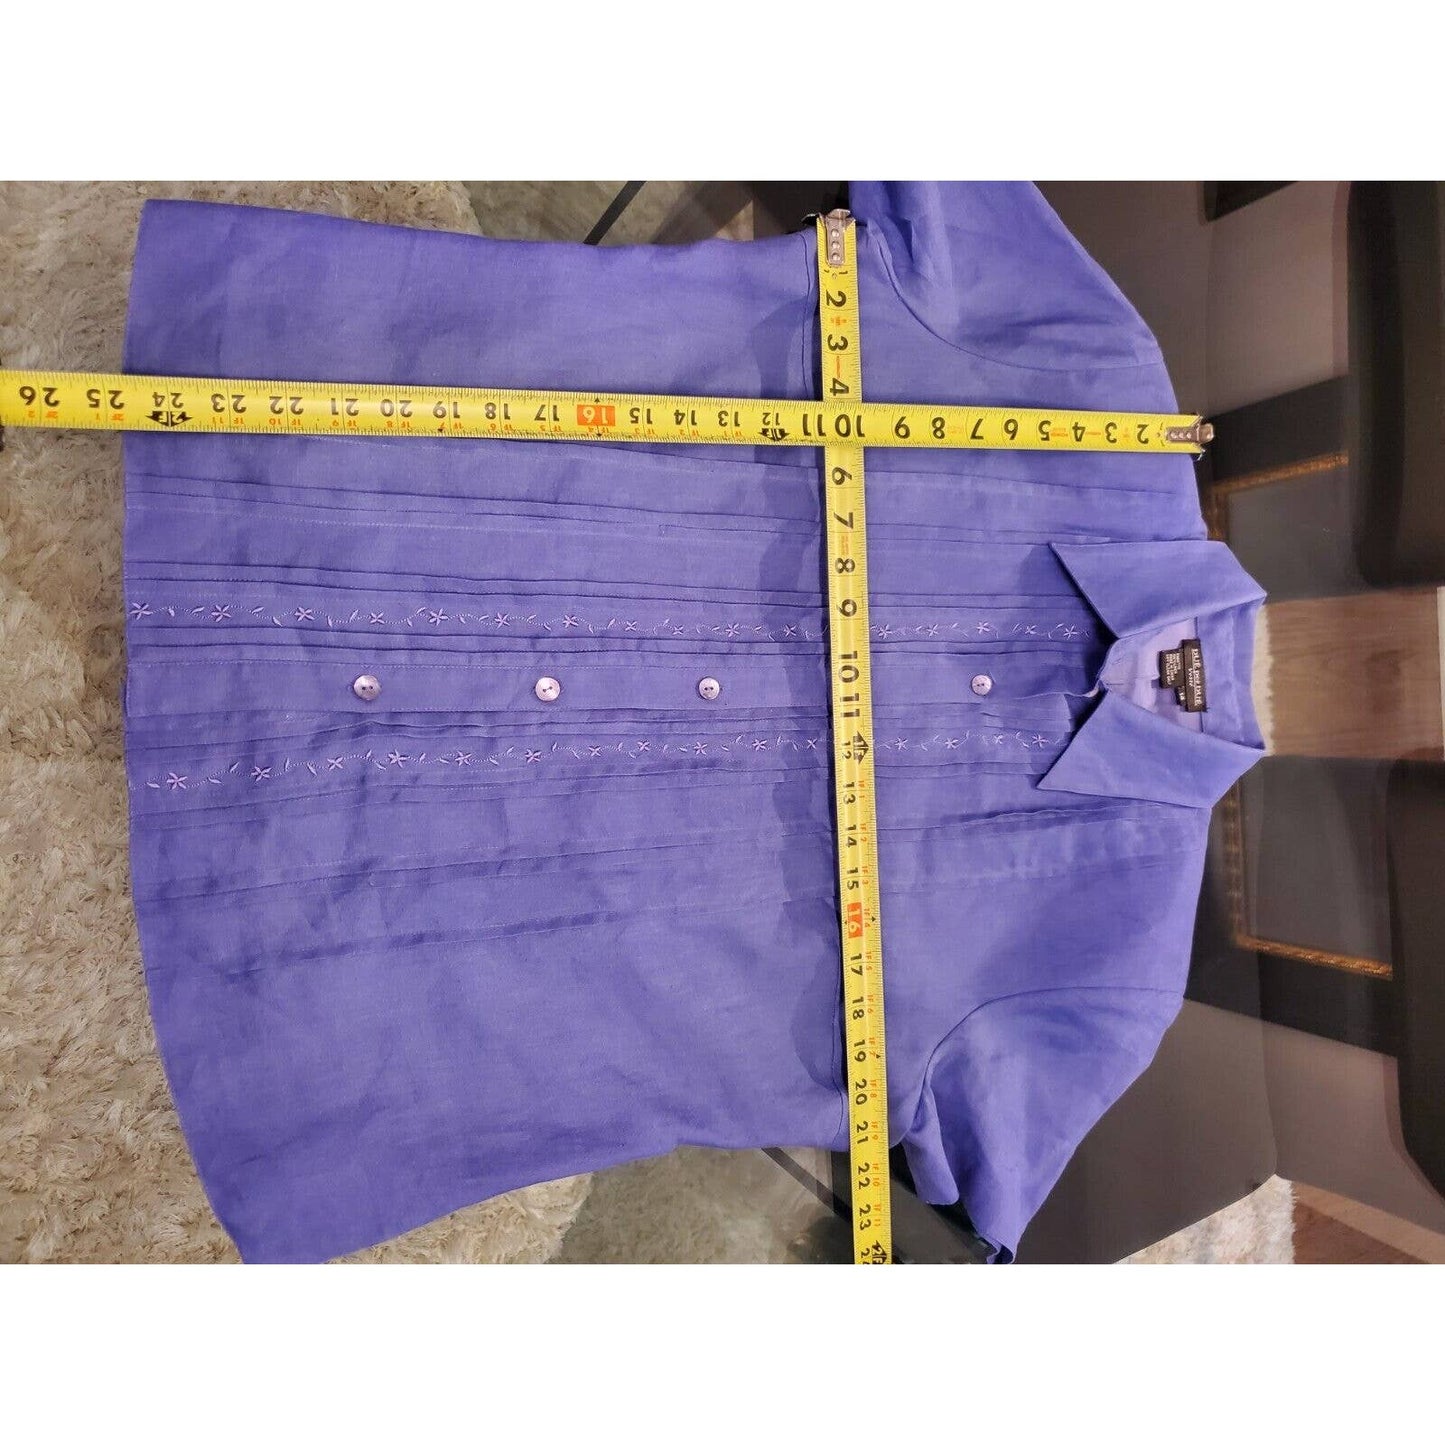 Due Per Due Women's Blue Linen Short Sleeve Shirt & Maxi Dress 2 Pc's Suit 14